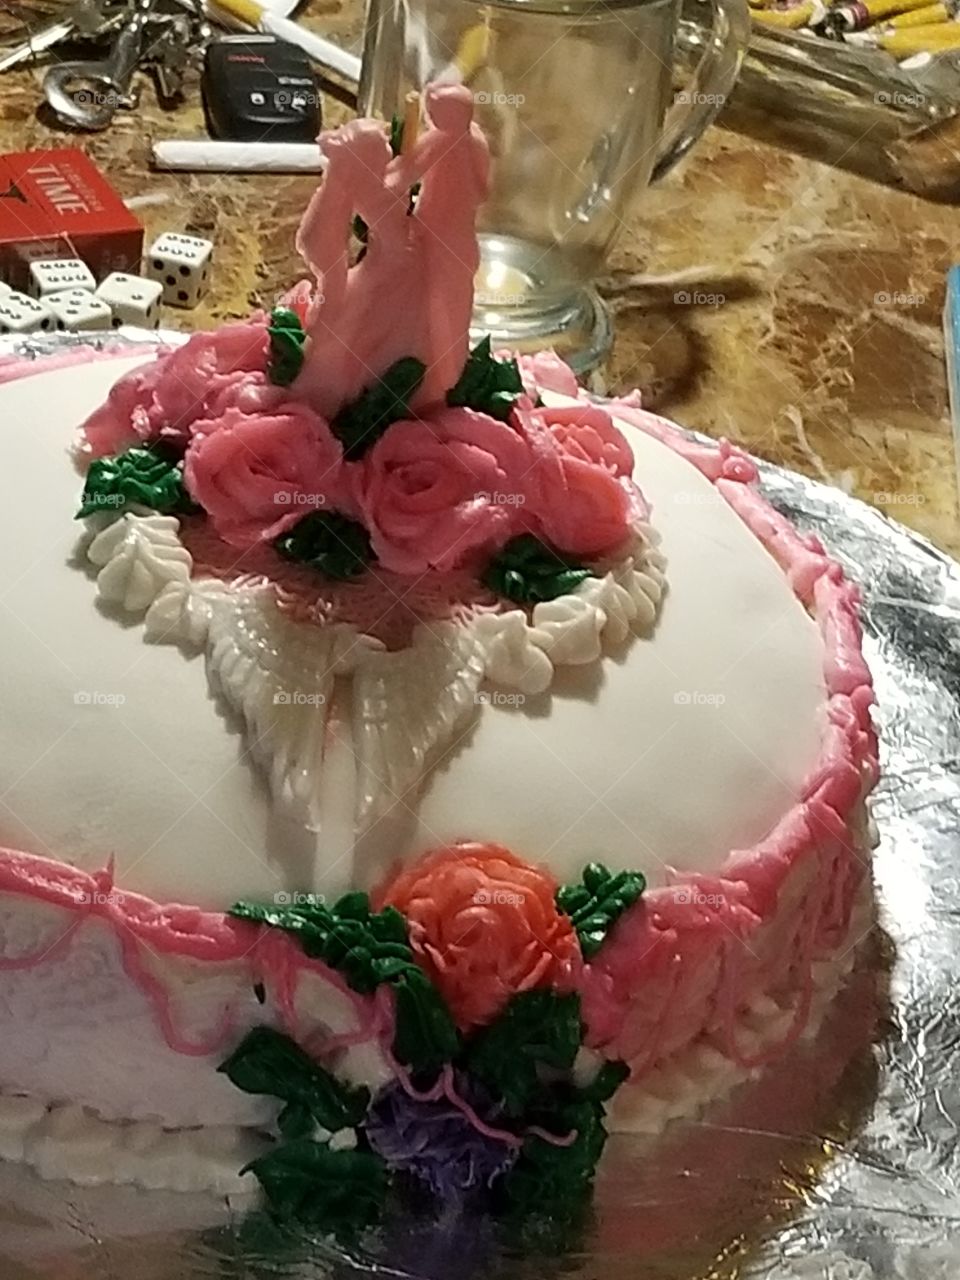 cake cake and more cake